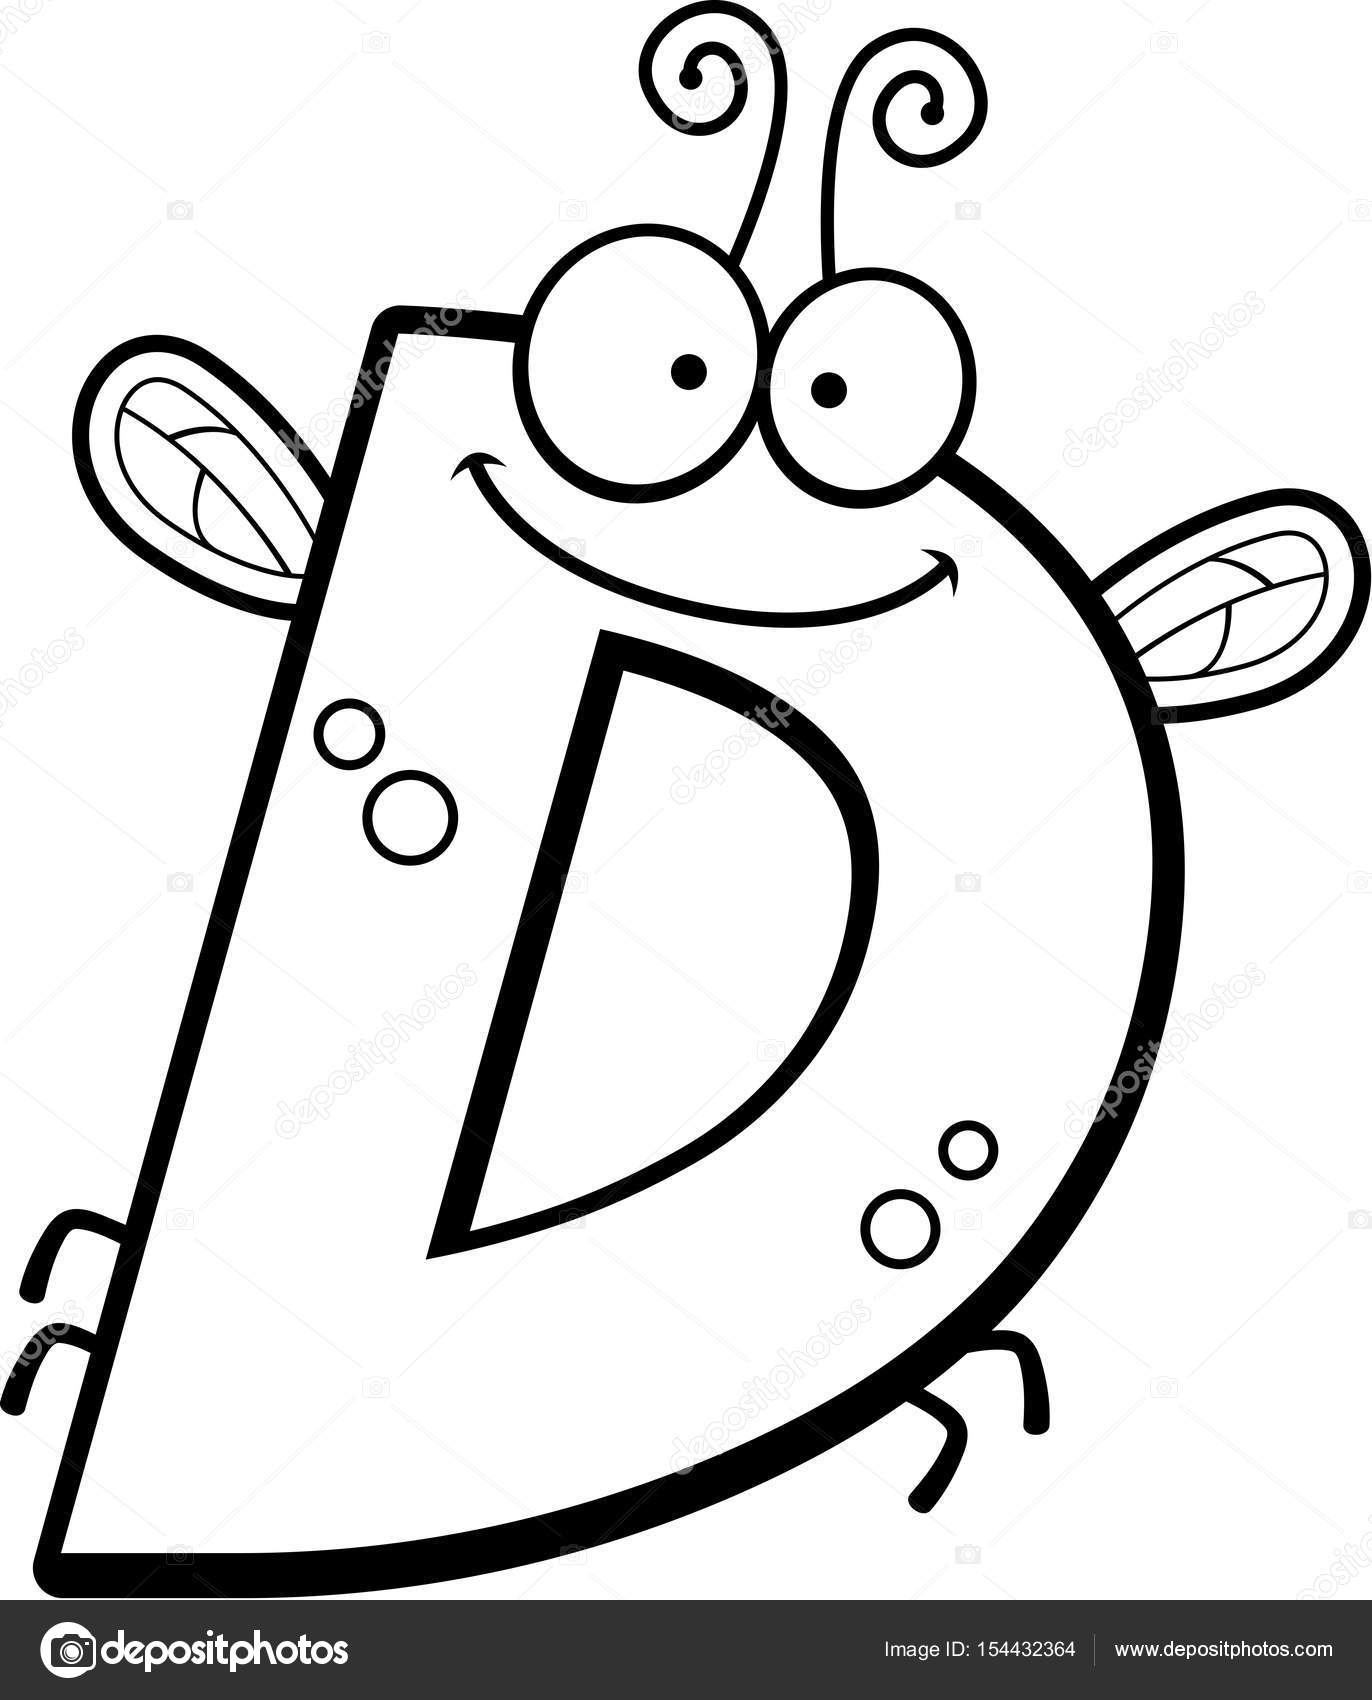 Bir böcek temalı D harfi çizgi film gösterimi. 